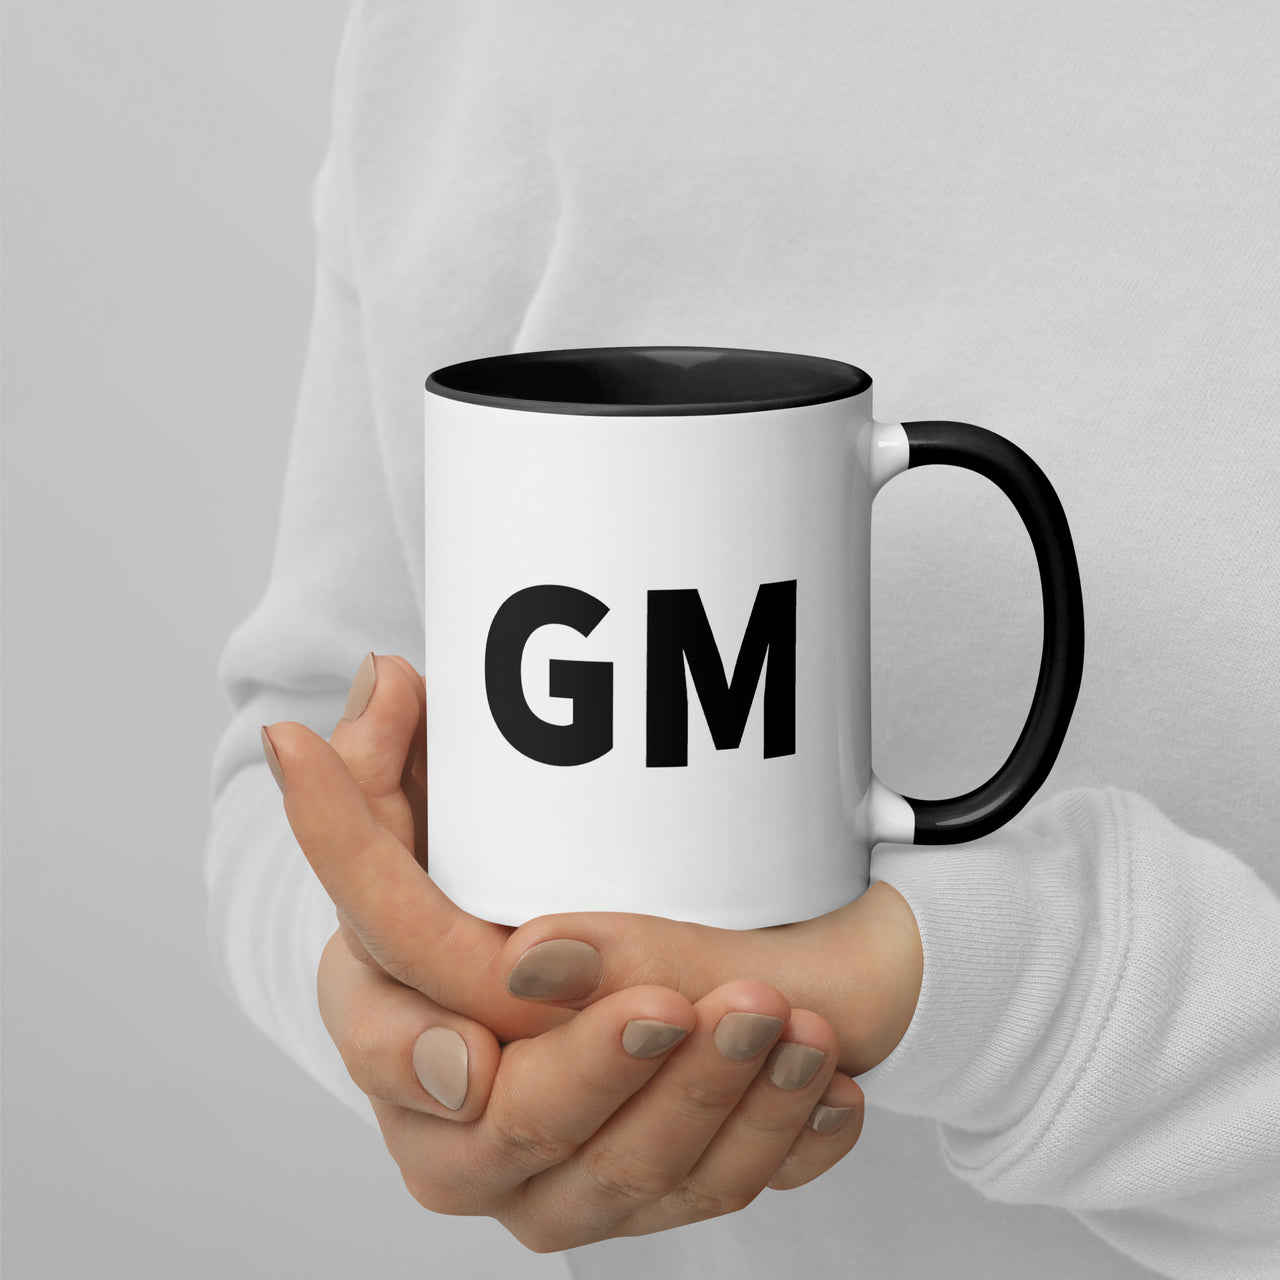 AAPES Gem - GM mug